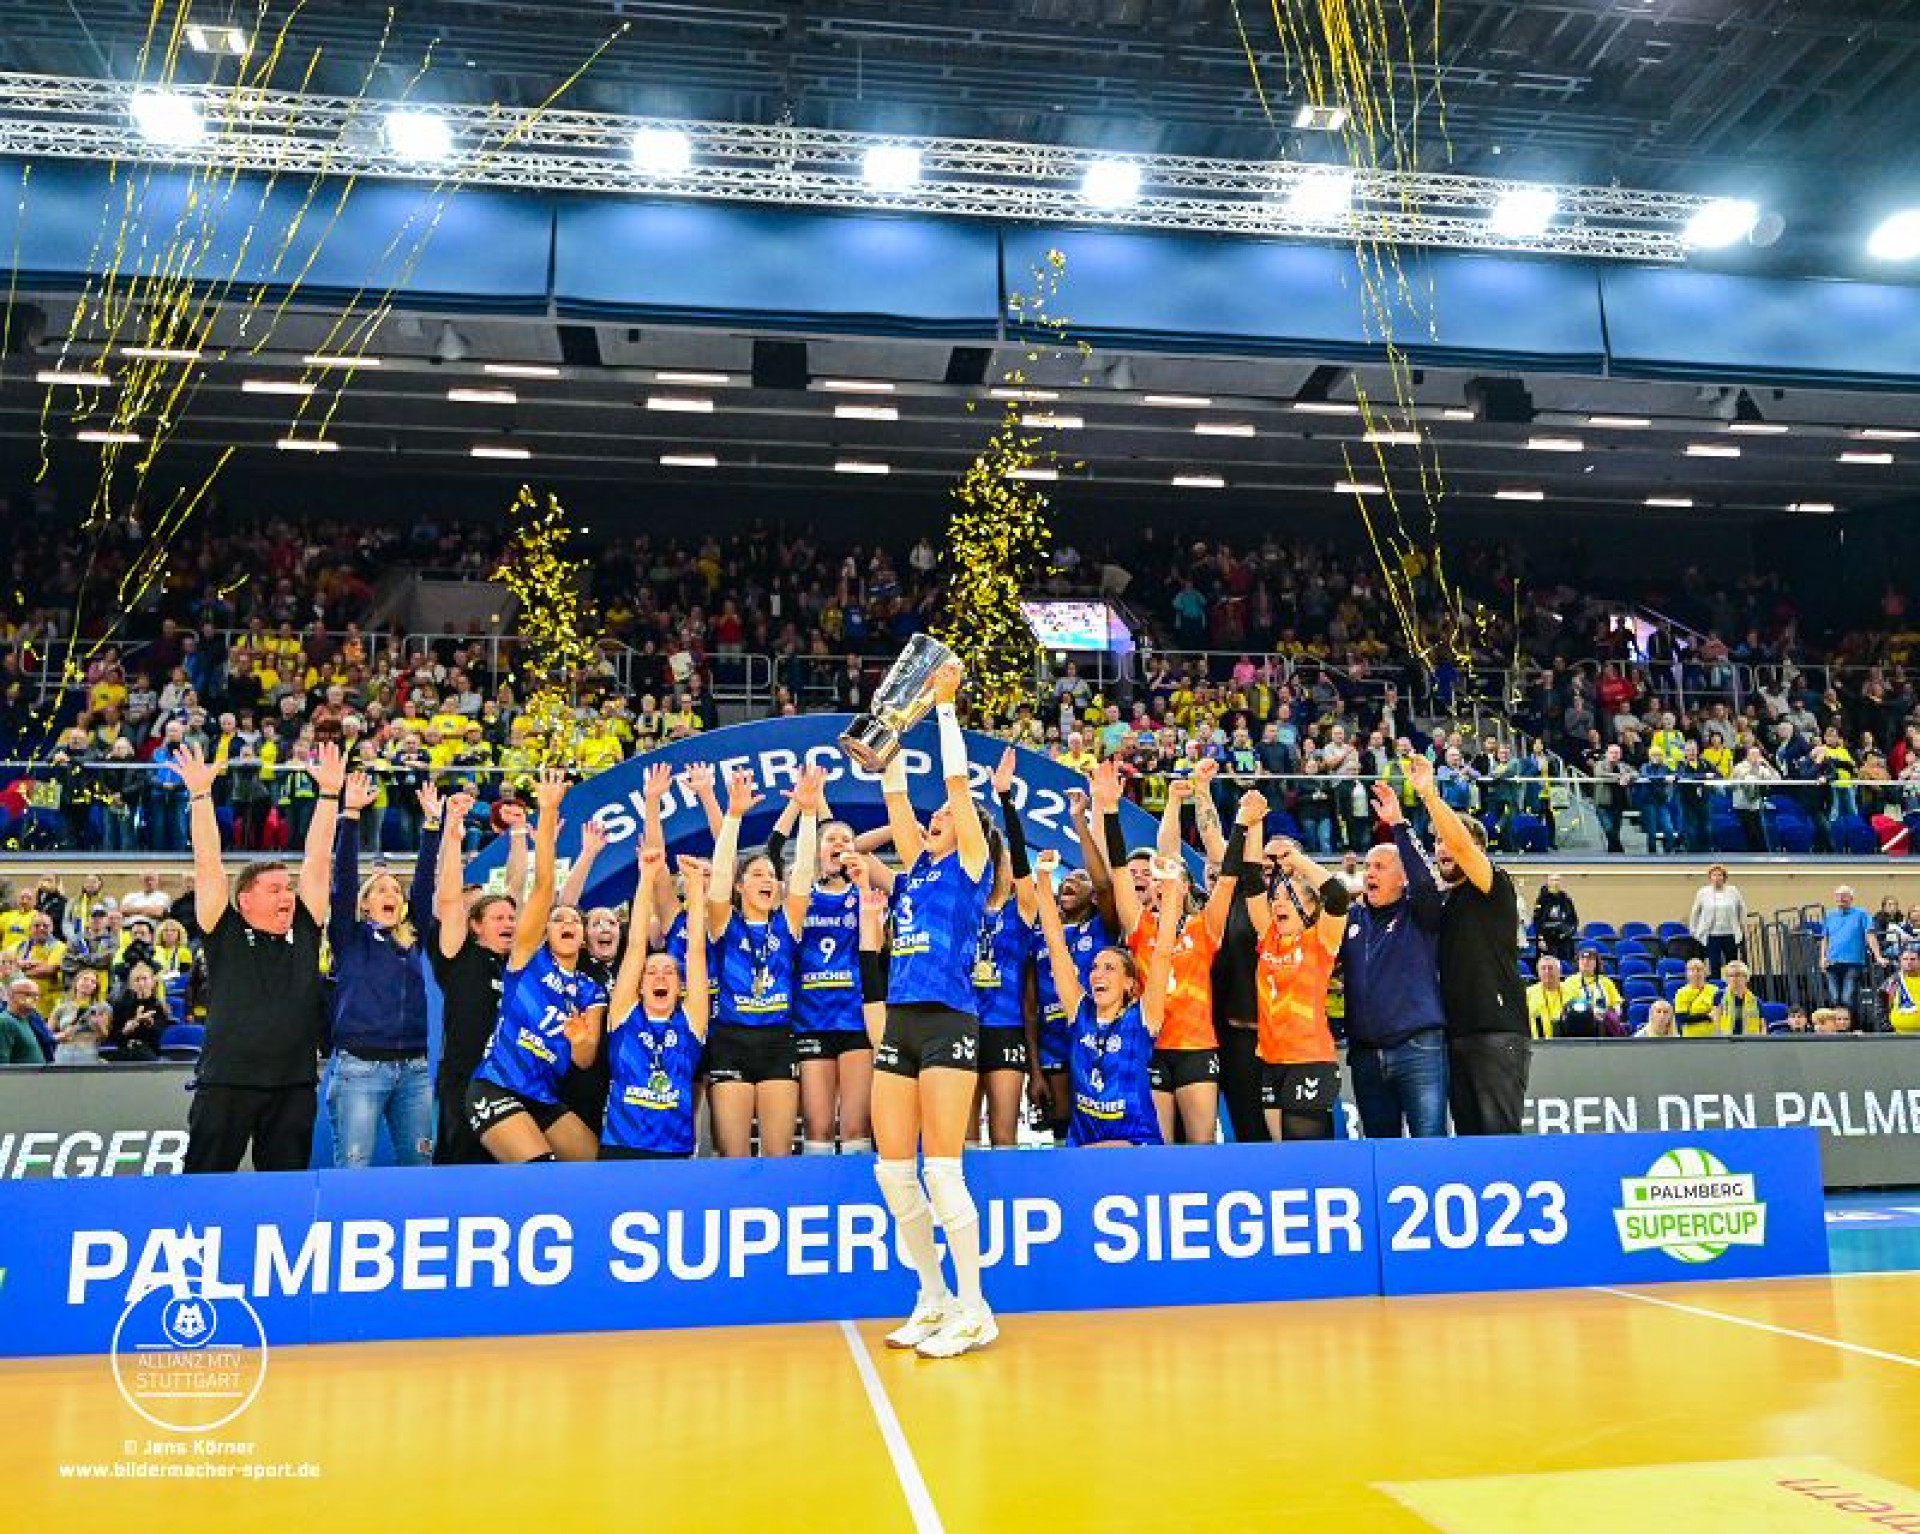 Supercup-Sieger 2023 - Allianz MTV Stuttgart - Foto: Jens Körner Bildermacher Sport